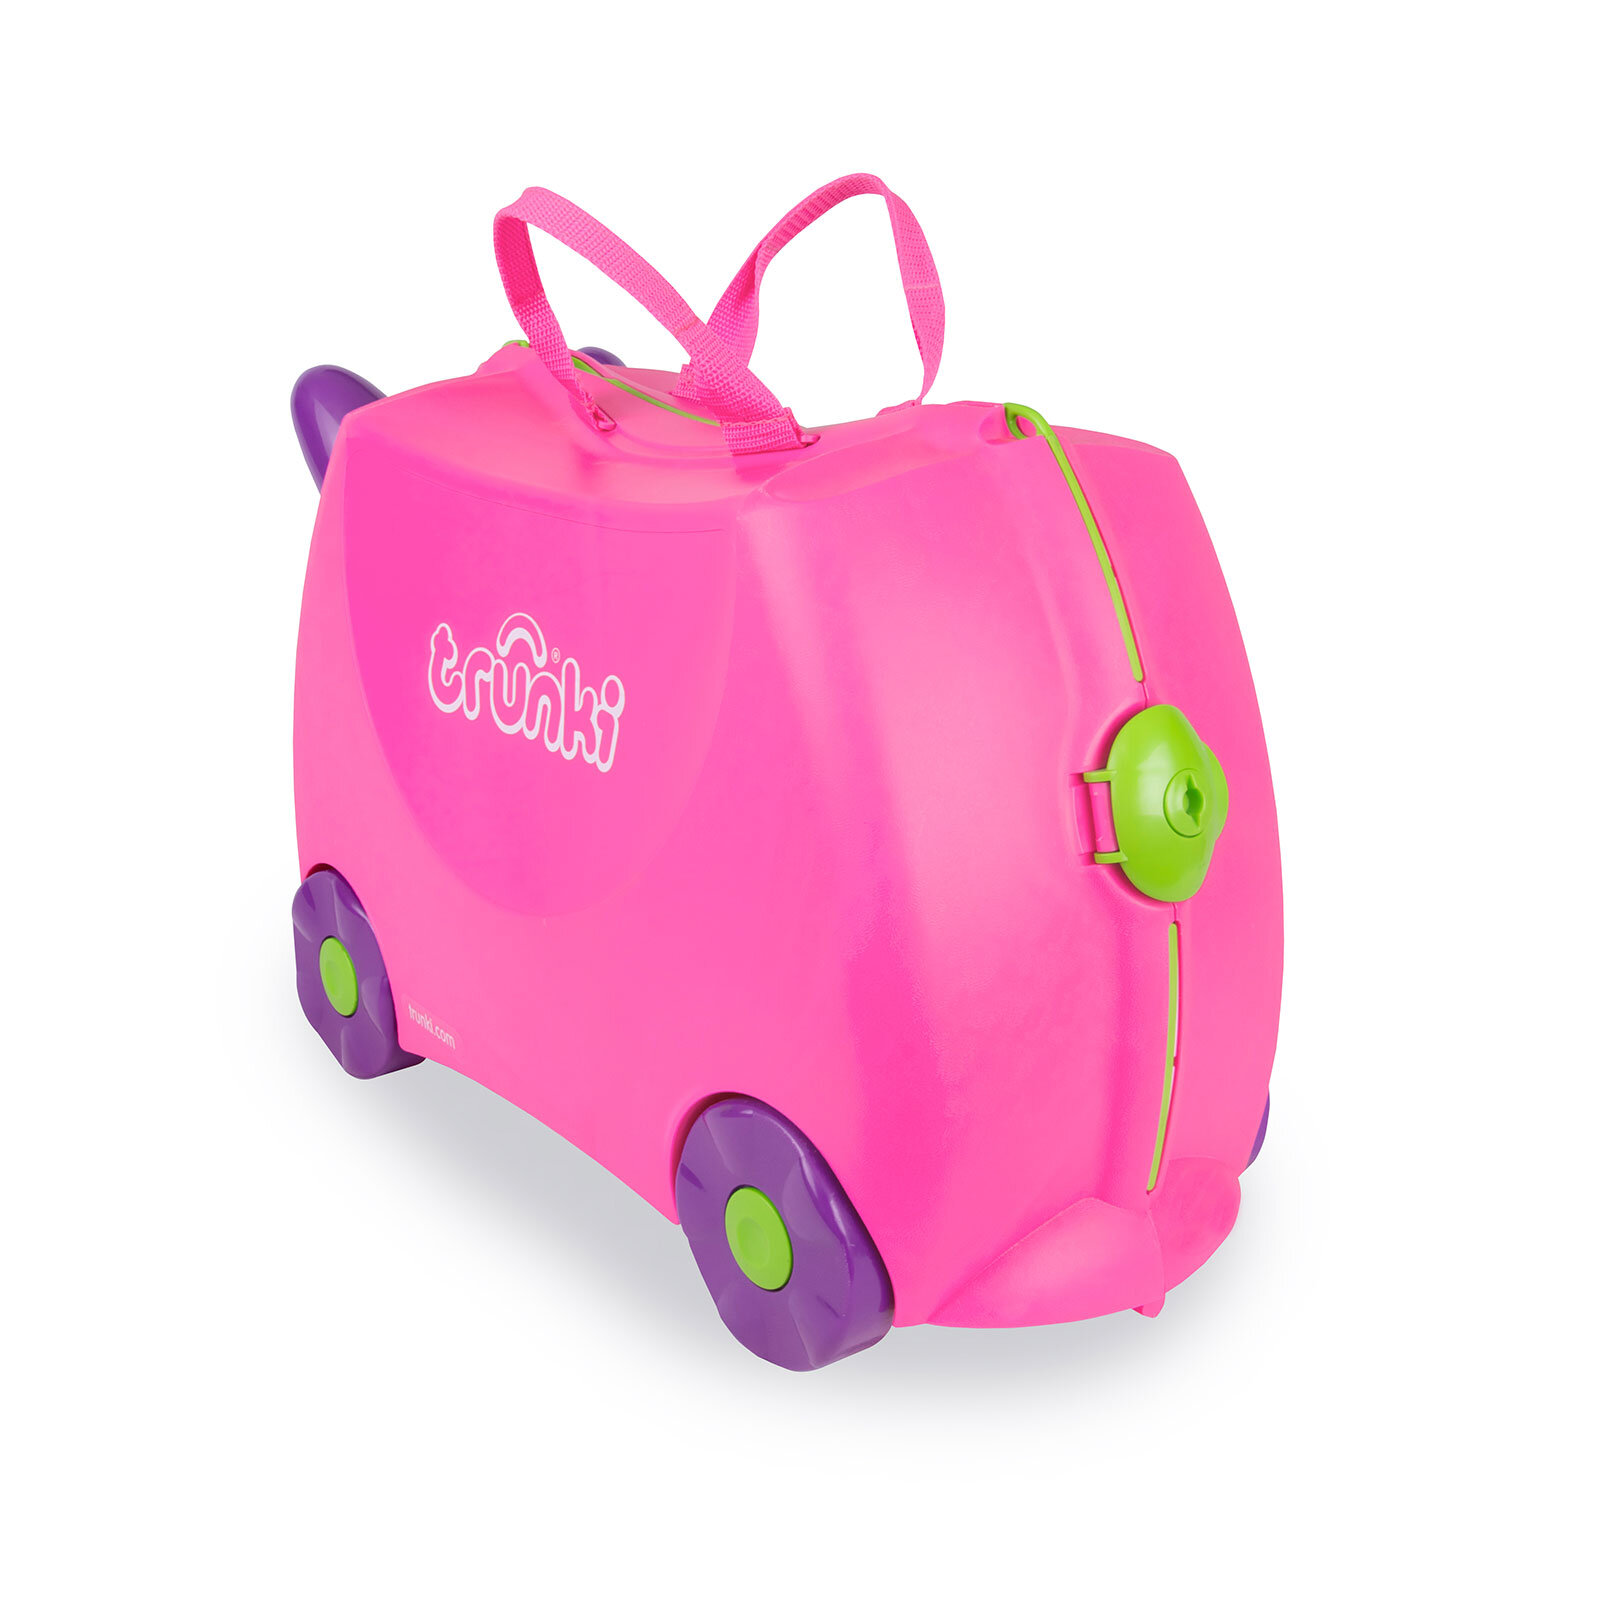 Binilen ve Sürülen Çocuk Bavulu Pembe Trixie